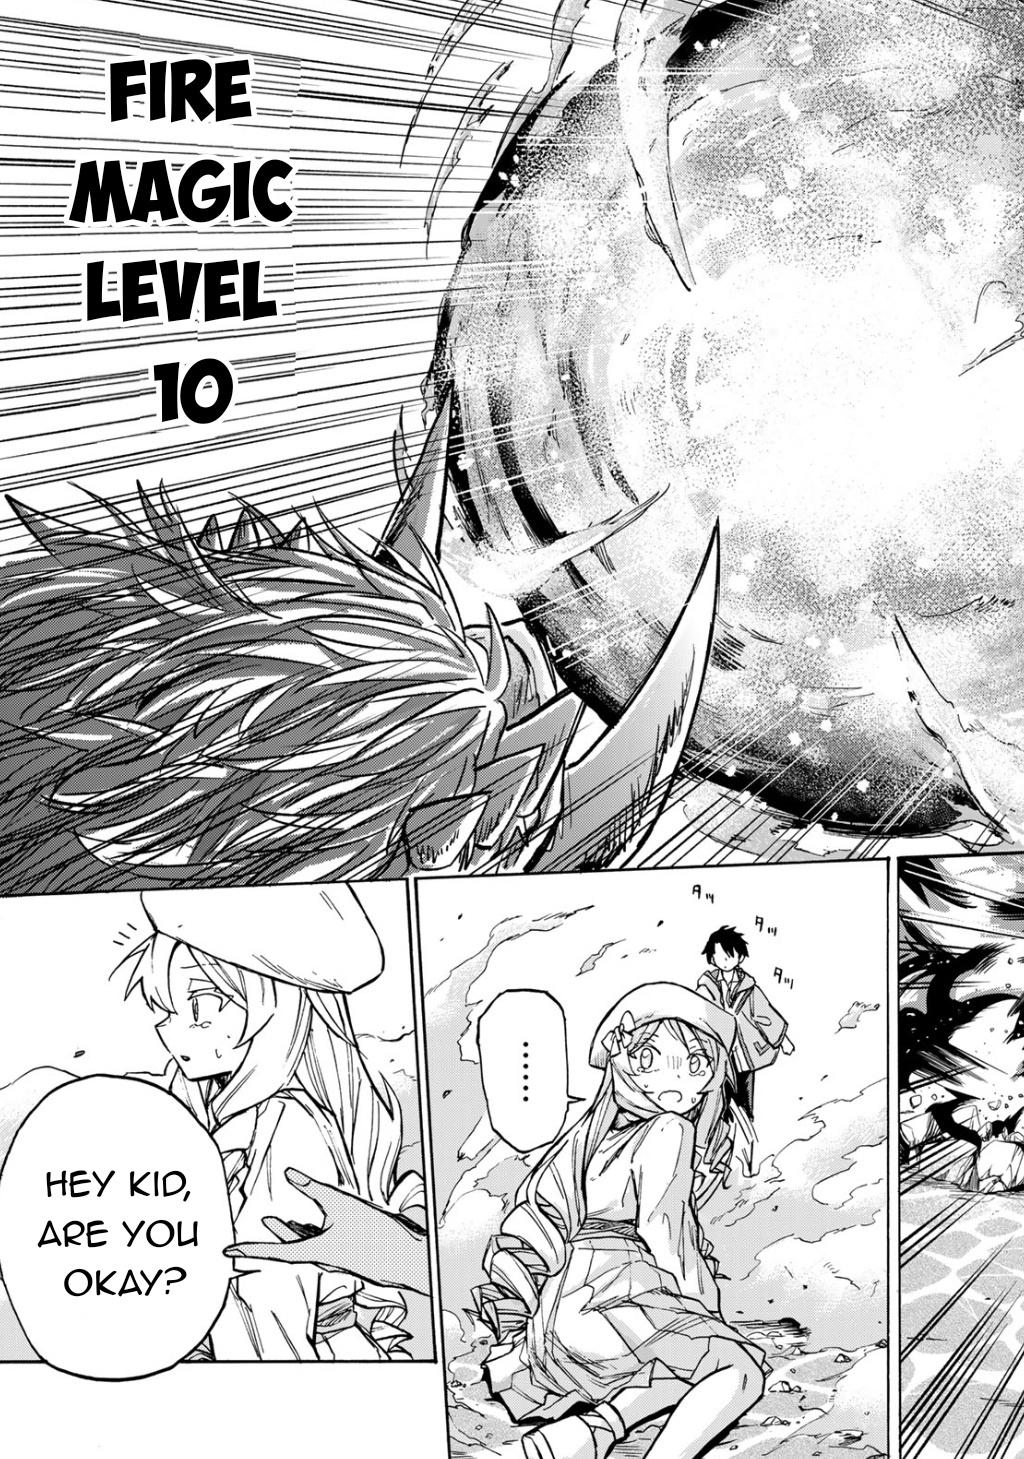 Saikyou de Saisoku no Mugen Level Up Ch.3 Page 7 - Mangago